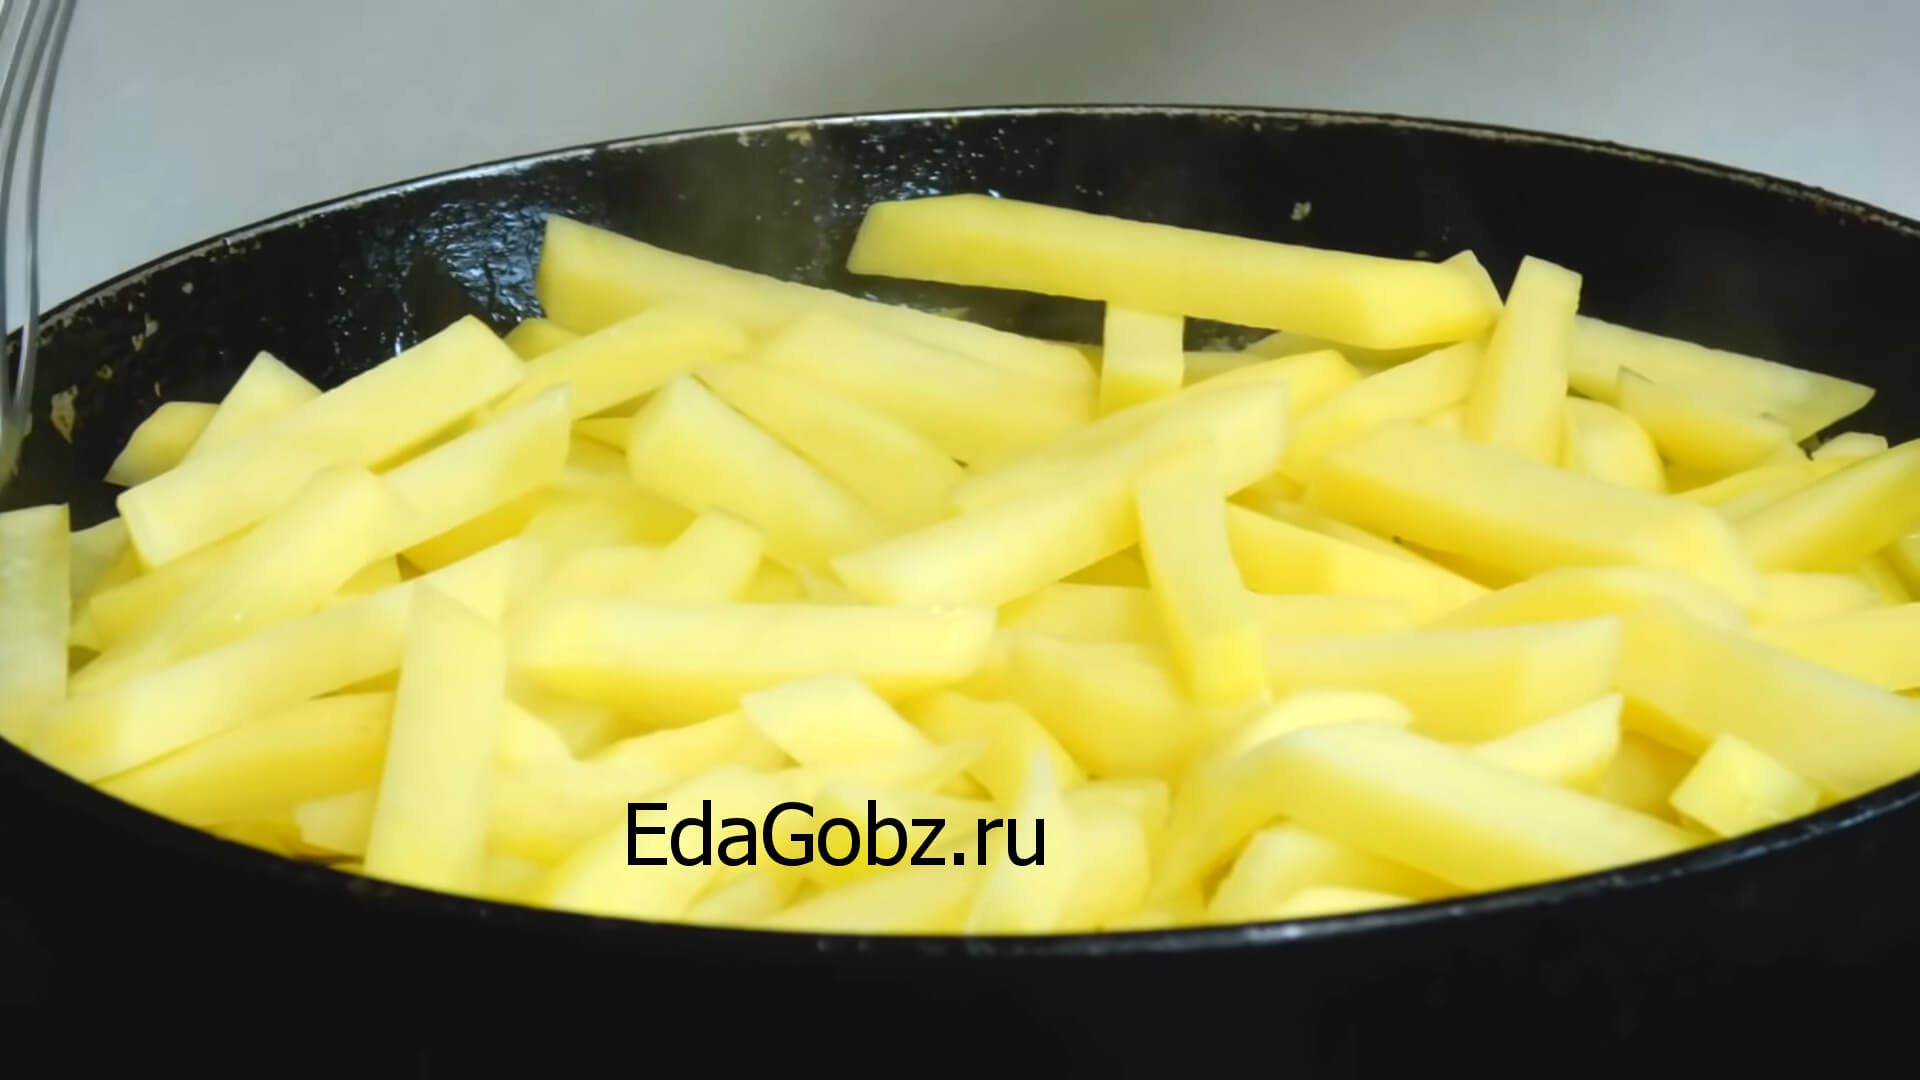 фото приготовления картошки